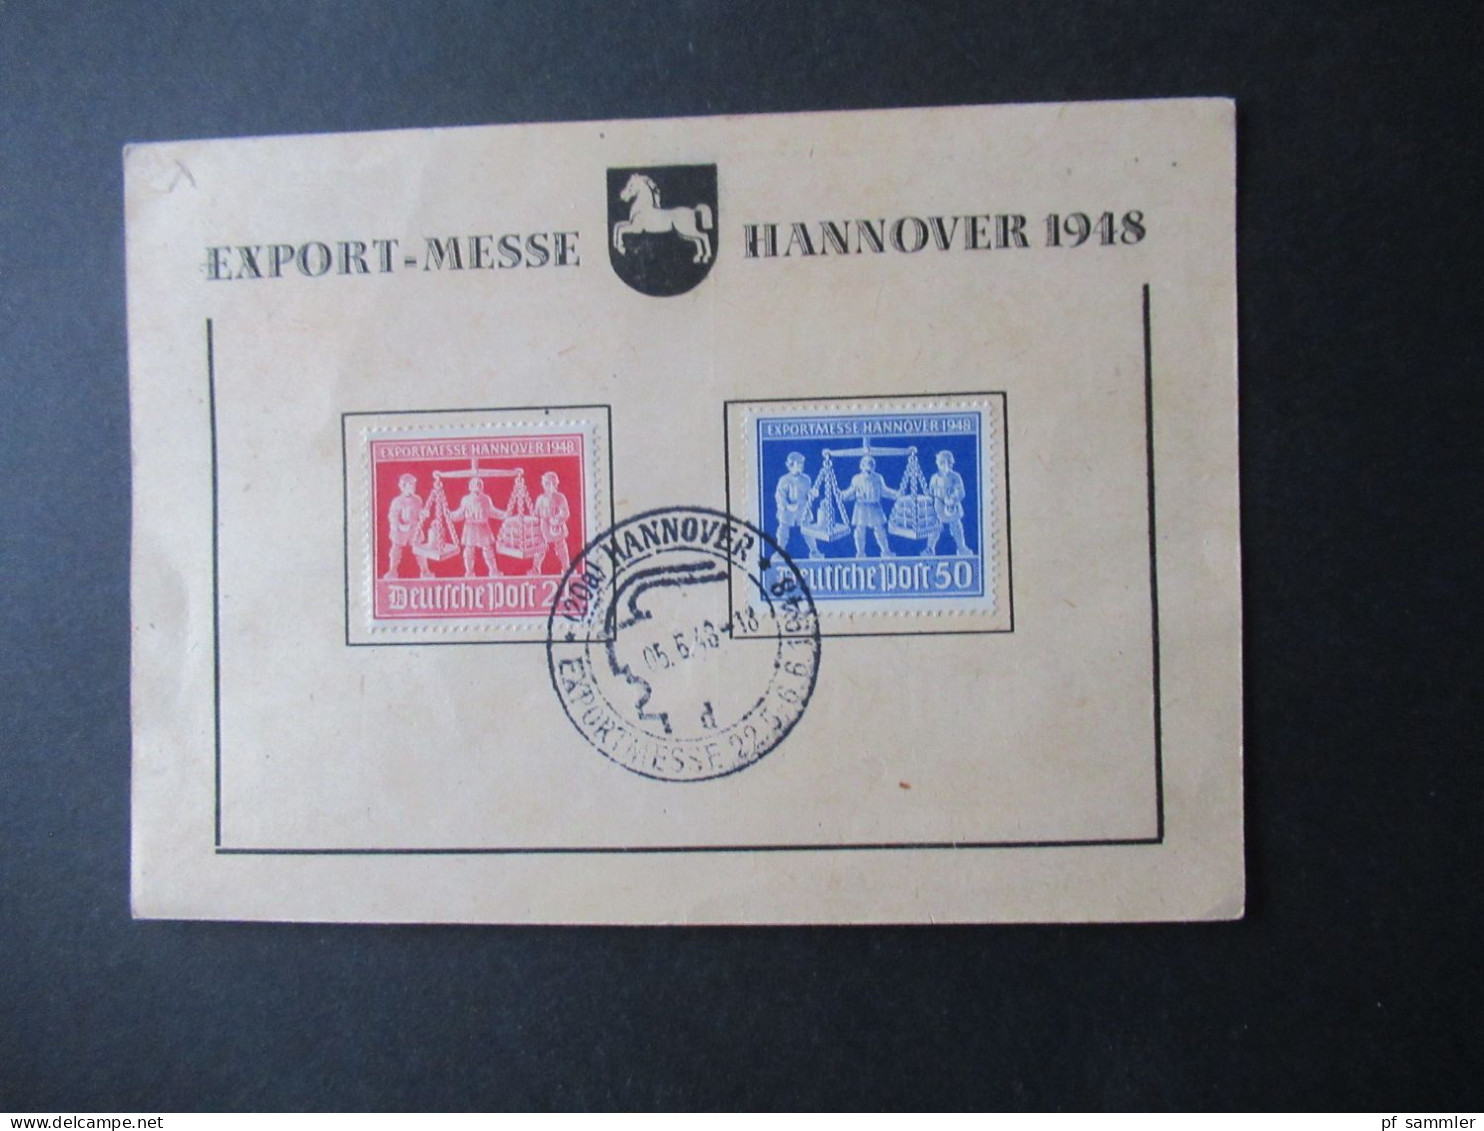 Kontrollrat 1948 Sonder PK Export Messe Hannover Nr.969 / 970 Sonderstempel Hannover D Exportmesse Offizielle PK - Briefe U. Dokumente